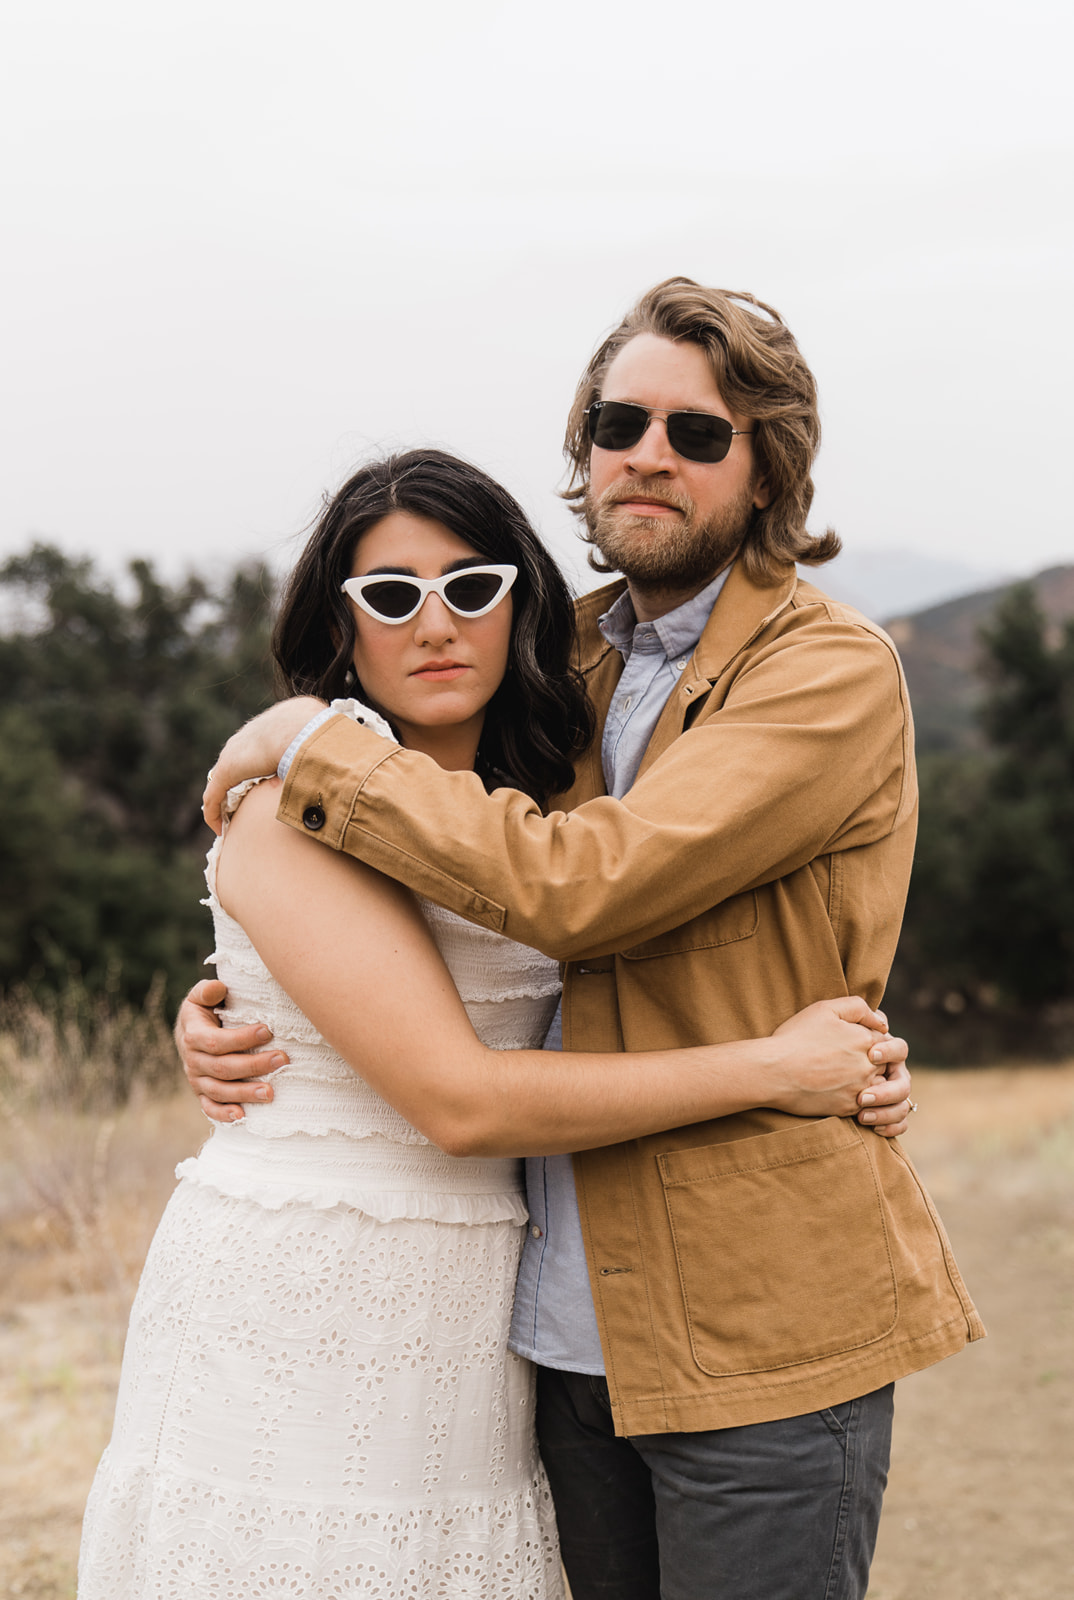 Woman and man hug with sunglasses on